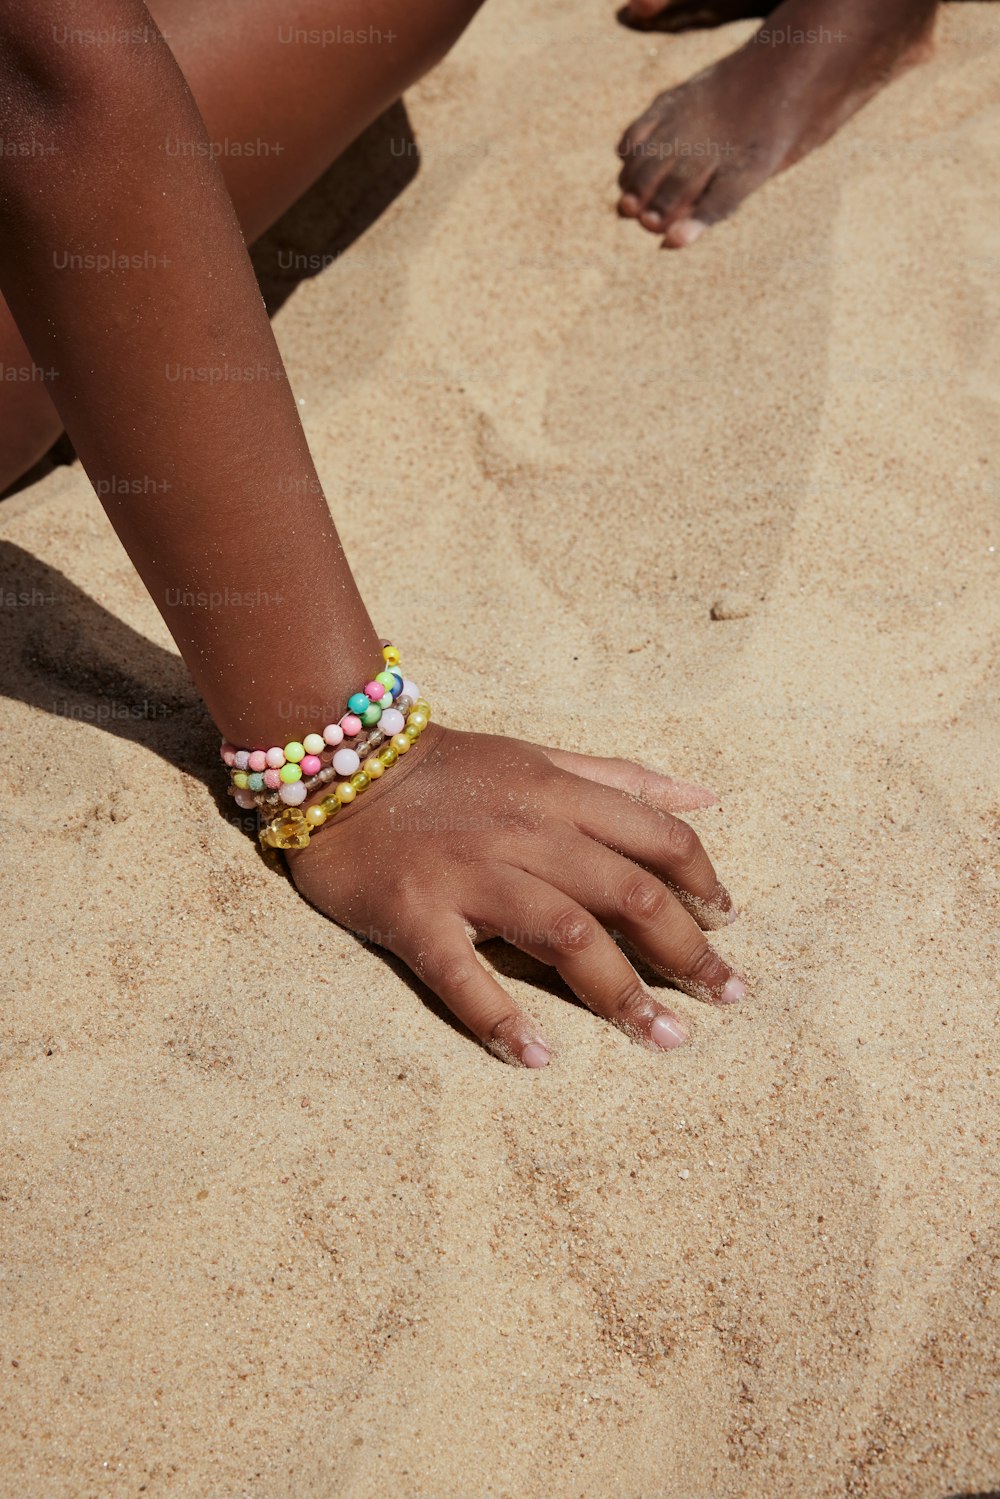 un gros plan de la main d’une personne sur le sable